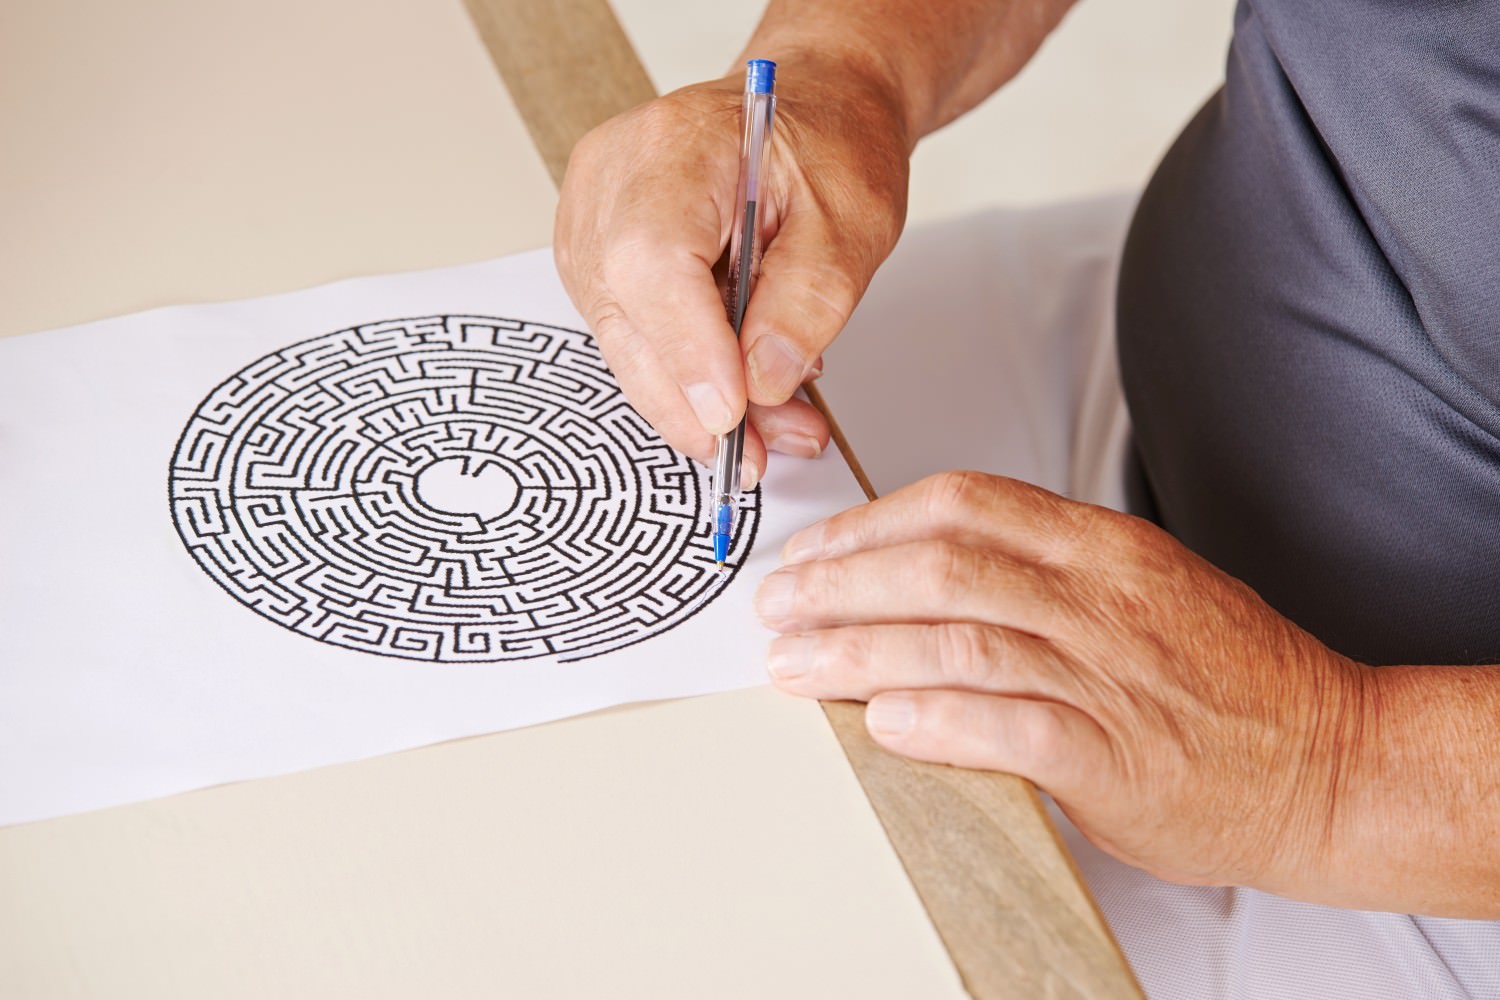 Bild Zeigt: Alter Mann malt in einem Labyrinth auf Papier